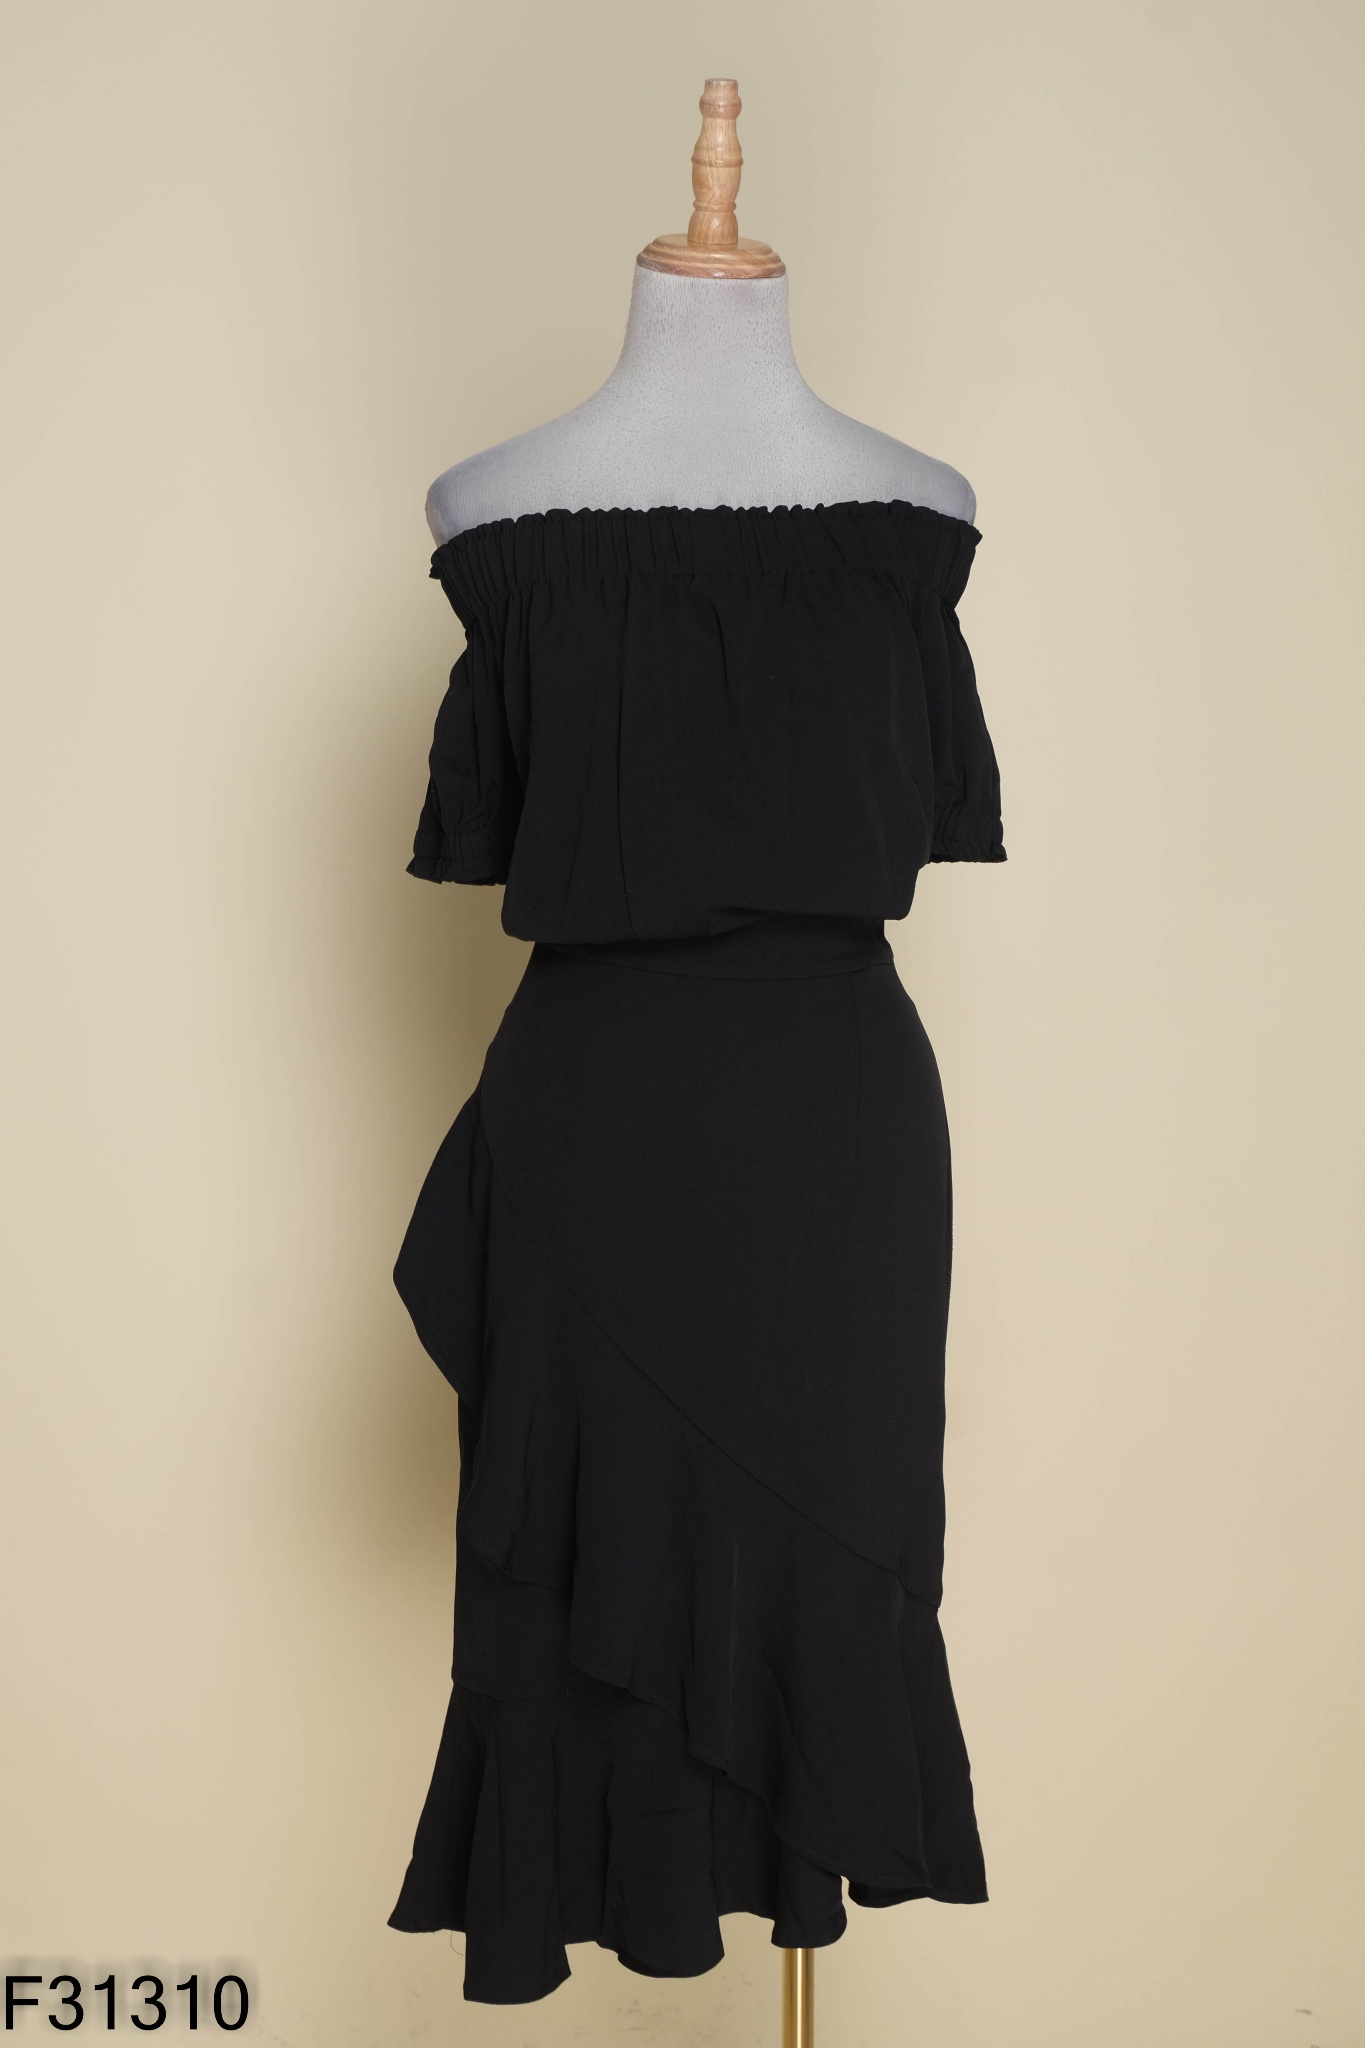 35087B03 - Chân váy đen voan hàn quốc, dáng xòe nhún 3 tầng phối ren. Thời  trang nữ Toson